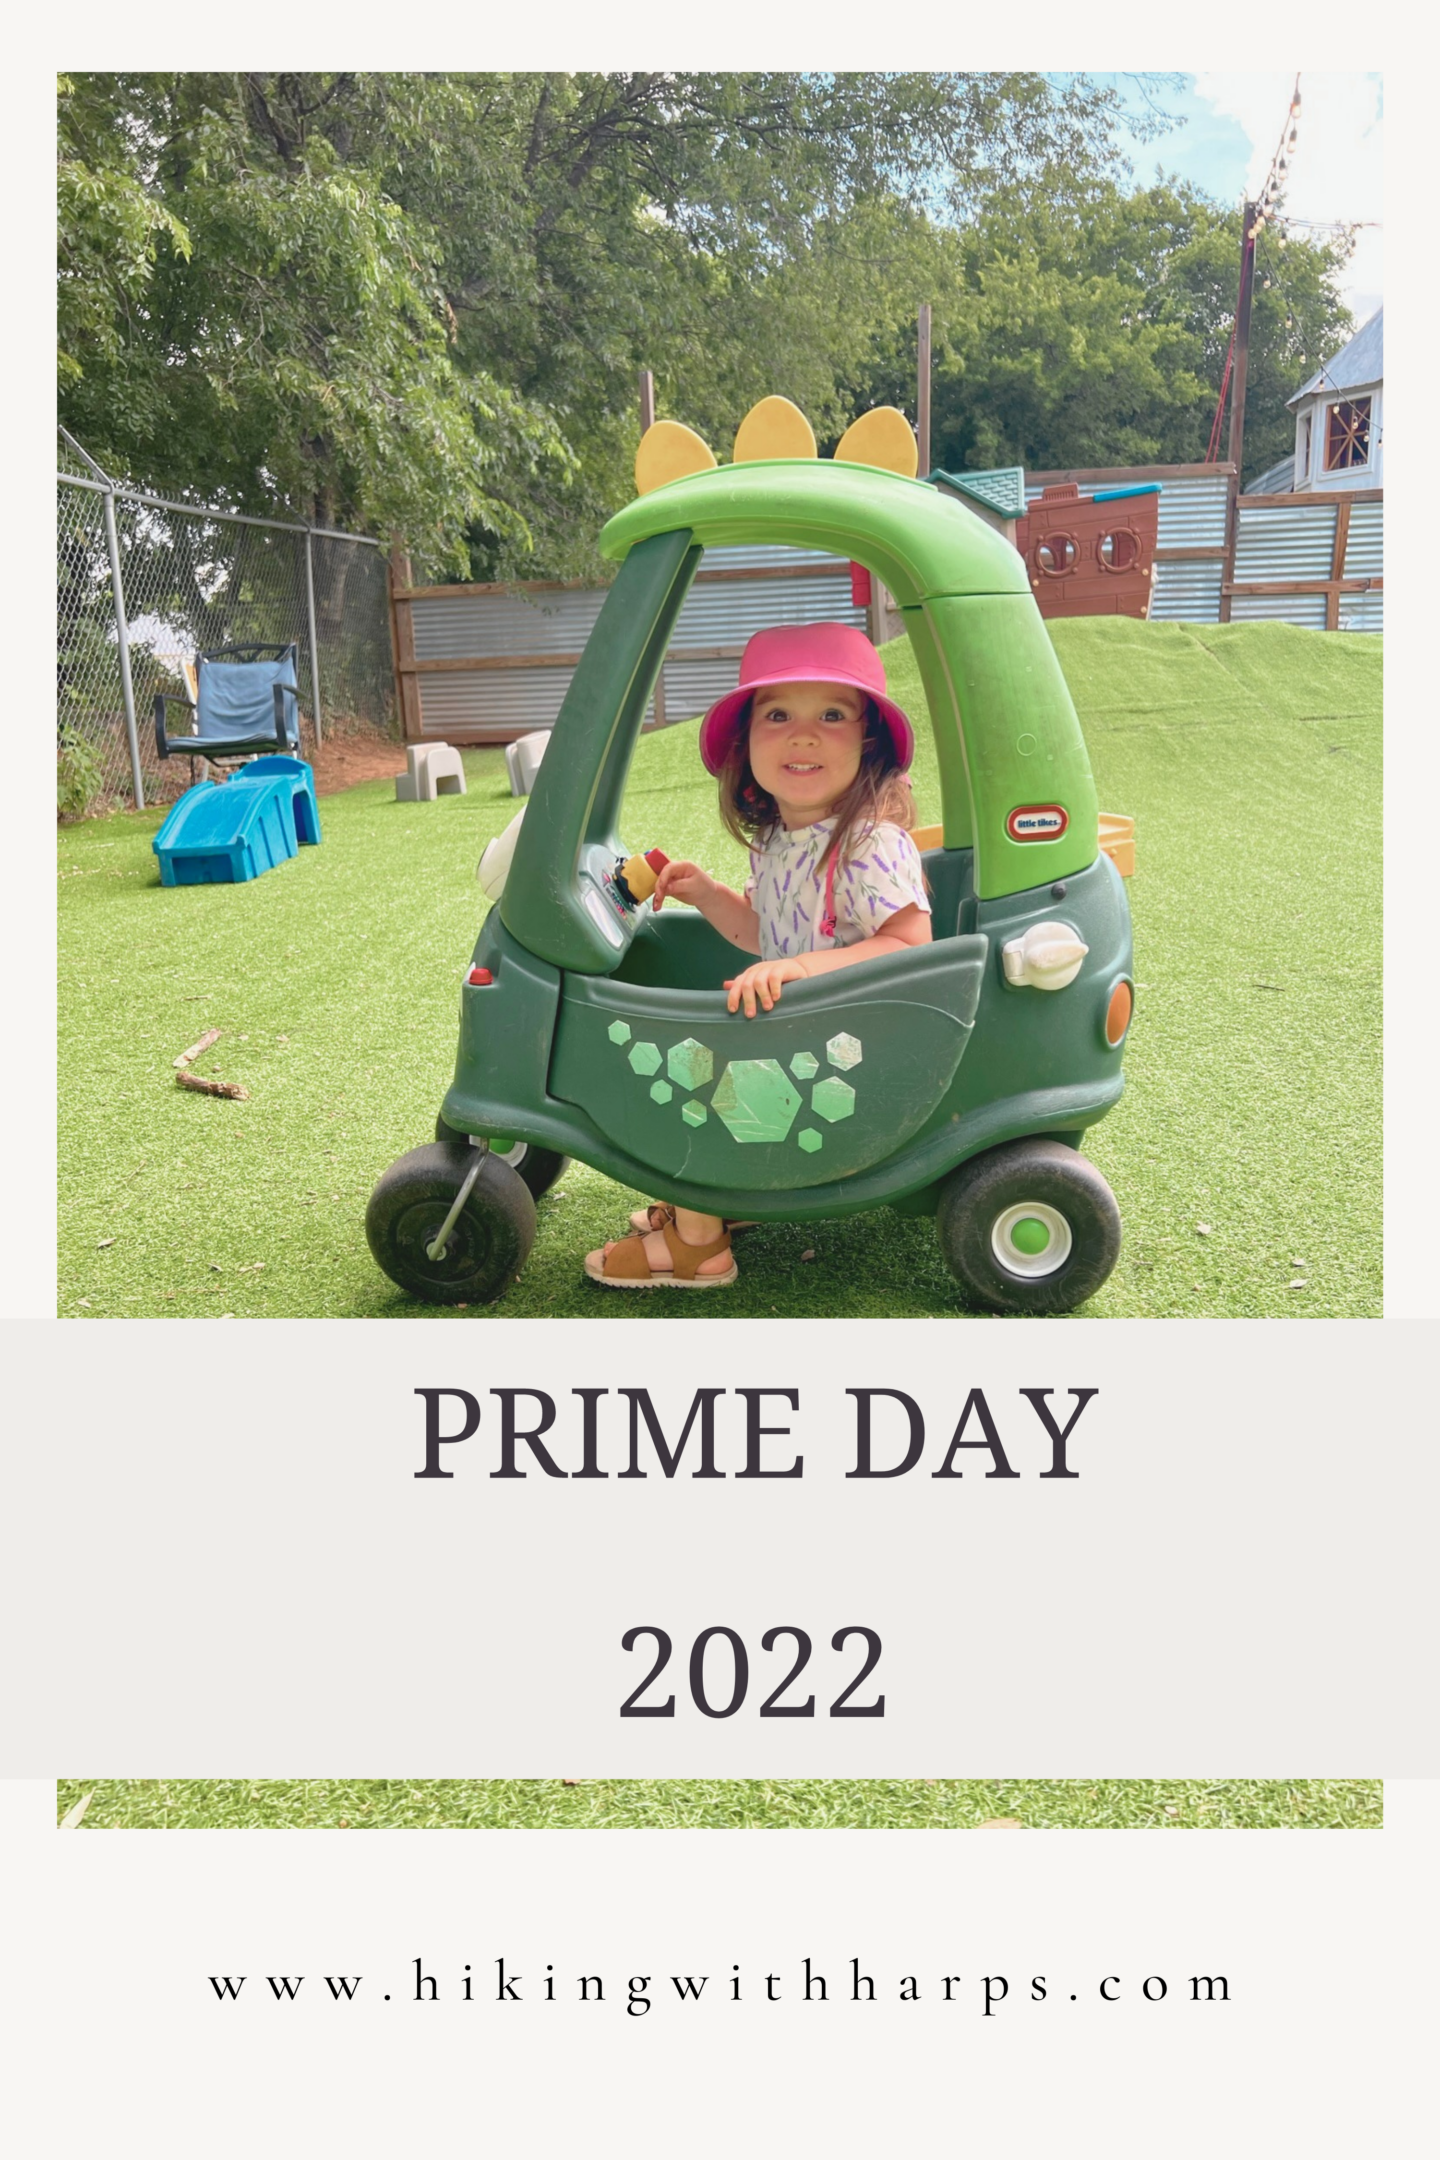 Prime Day 2022